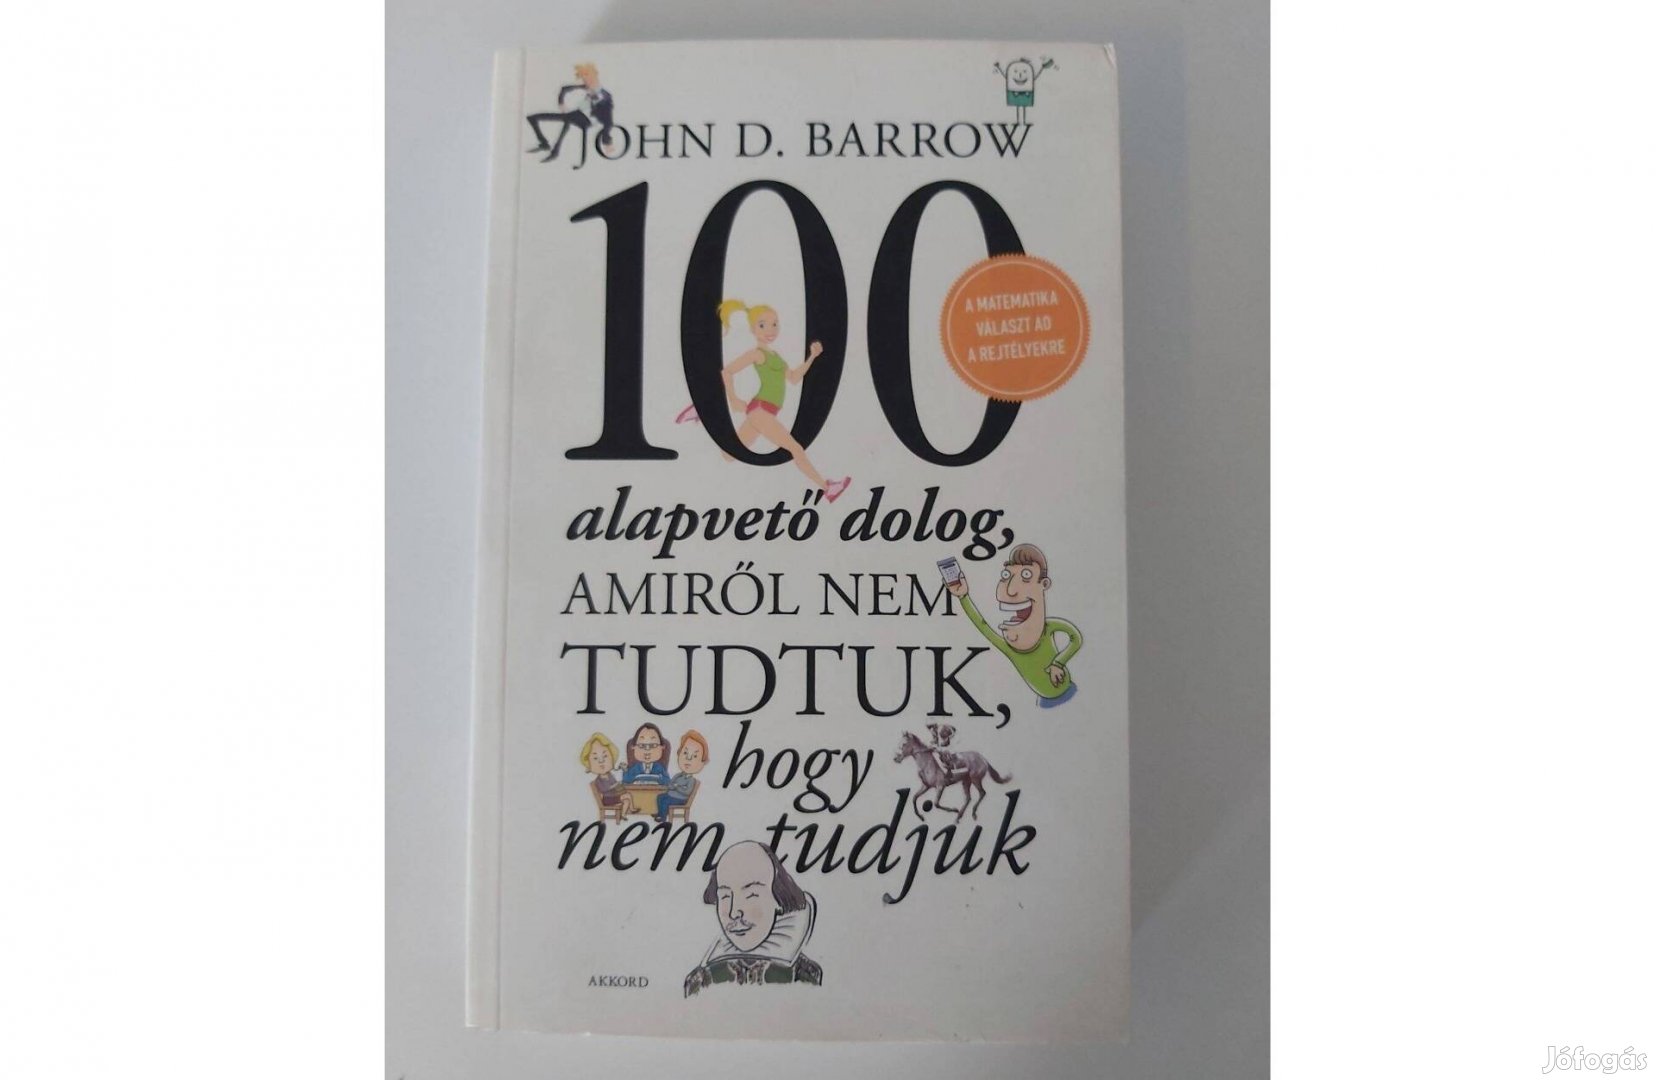 John D. Barrow: 100 alapvető dolog, amiről nem tudtuk, hogy nem tudjuk